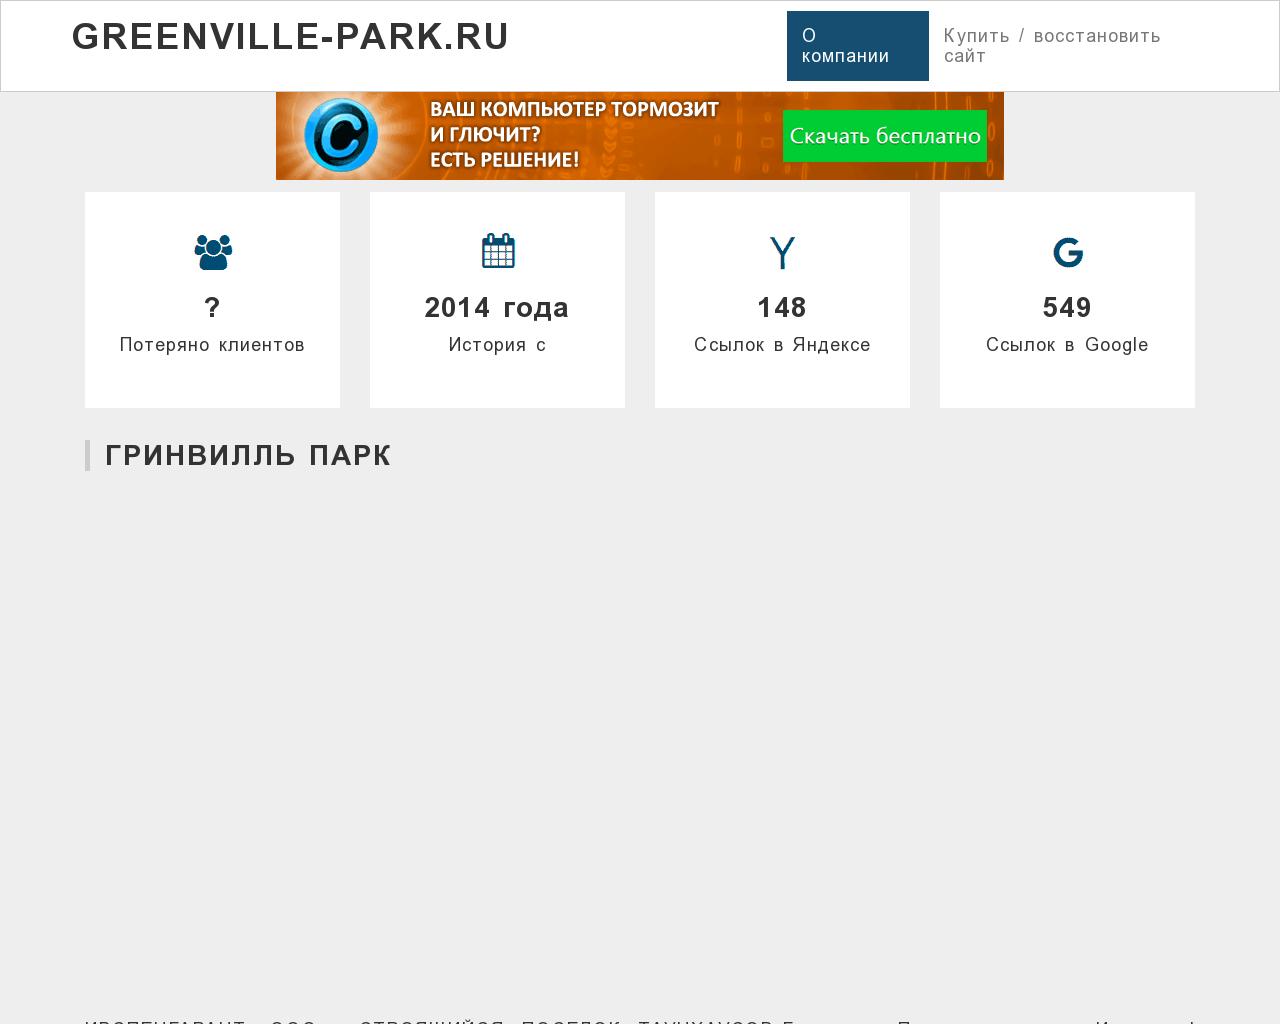 Изображение сайта greenville-park.ru в разрешении 1280x1024